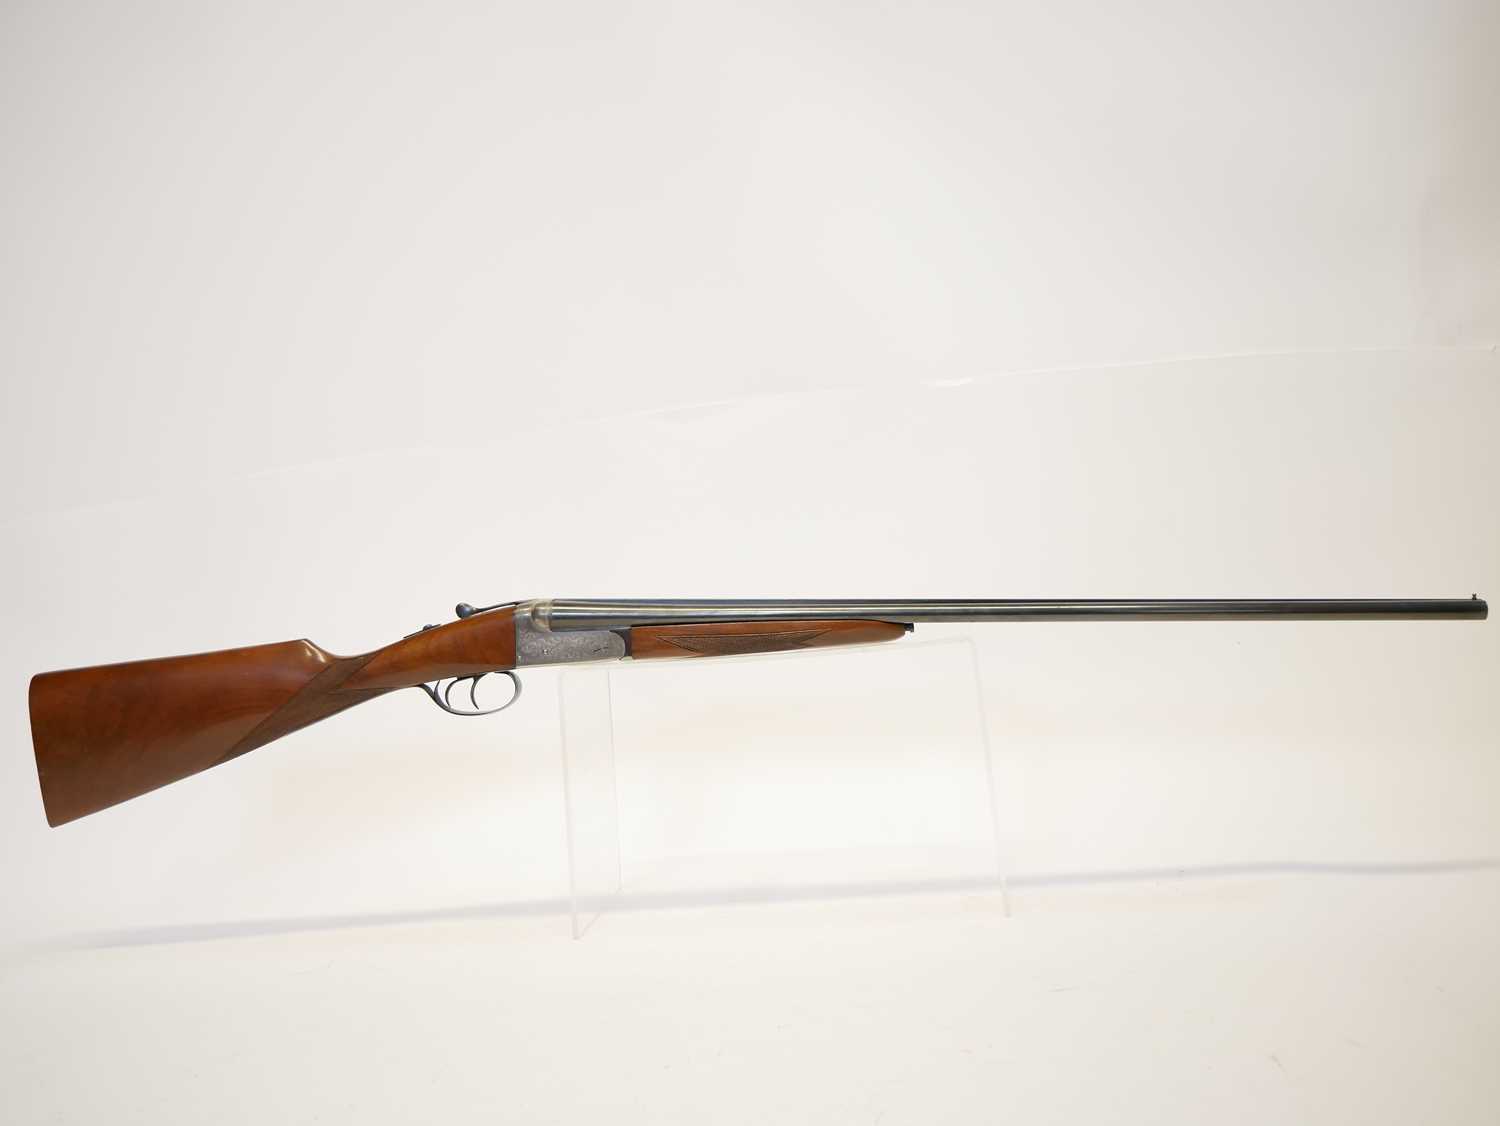 Gunmark Kestral side by side .410 shotgun, serial number 275375, 25.72" barrels, boxlock non ejector - Image 2 of 13